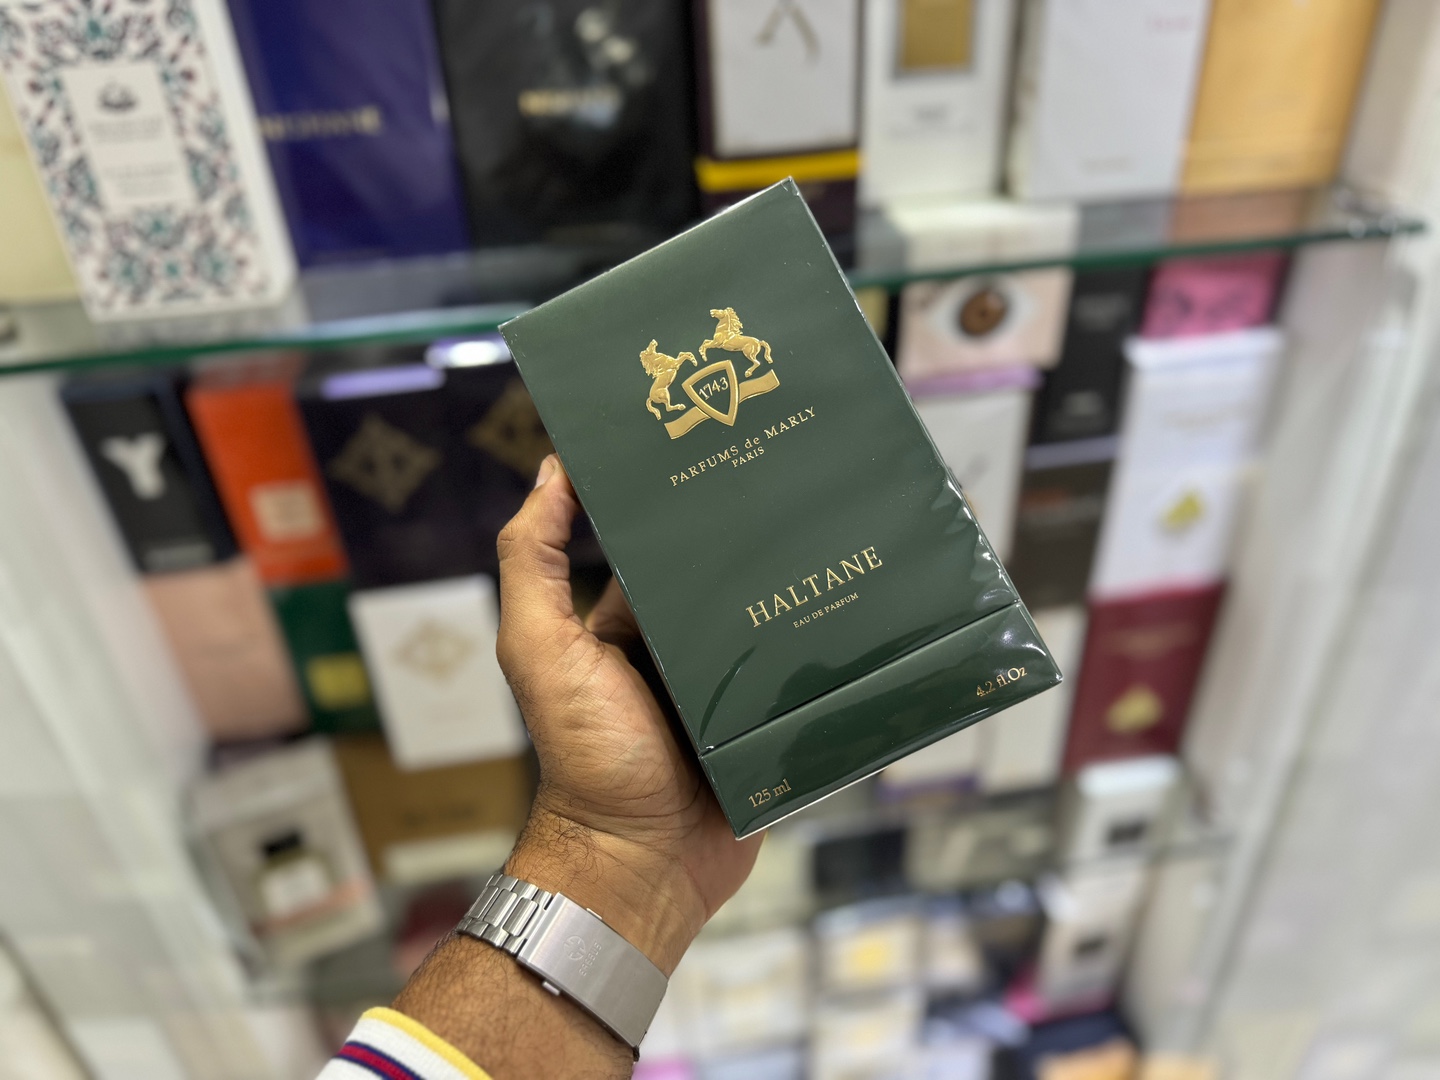 joyas, relojes y accesorios - Perfume Parfums de Marly Haltane 125ml Nuevo, Original RD$ 21,500 NEG